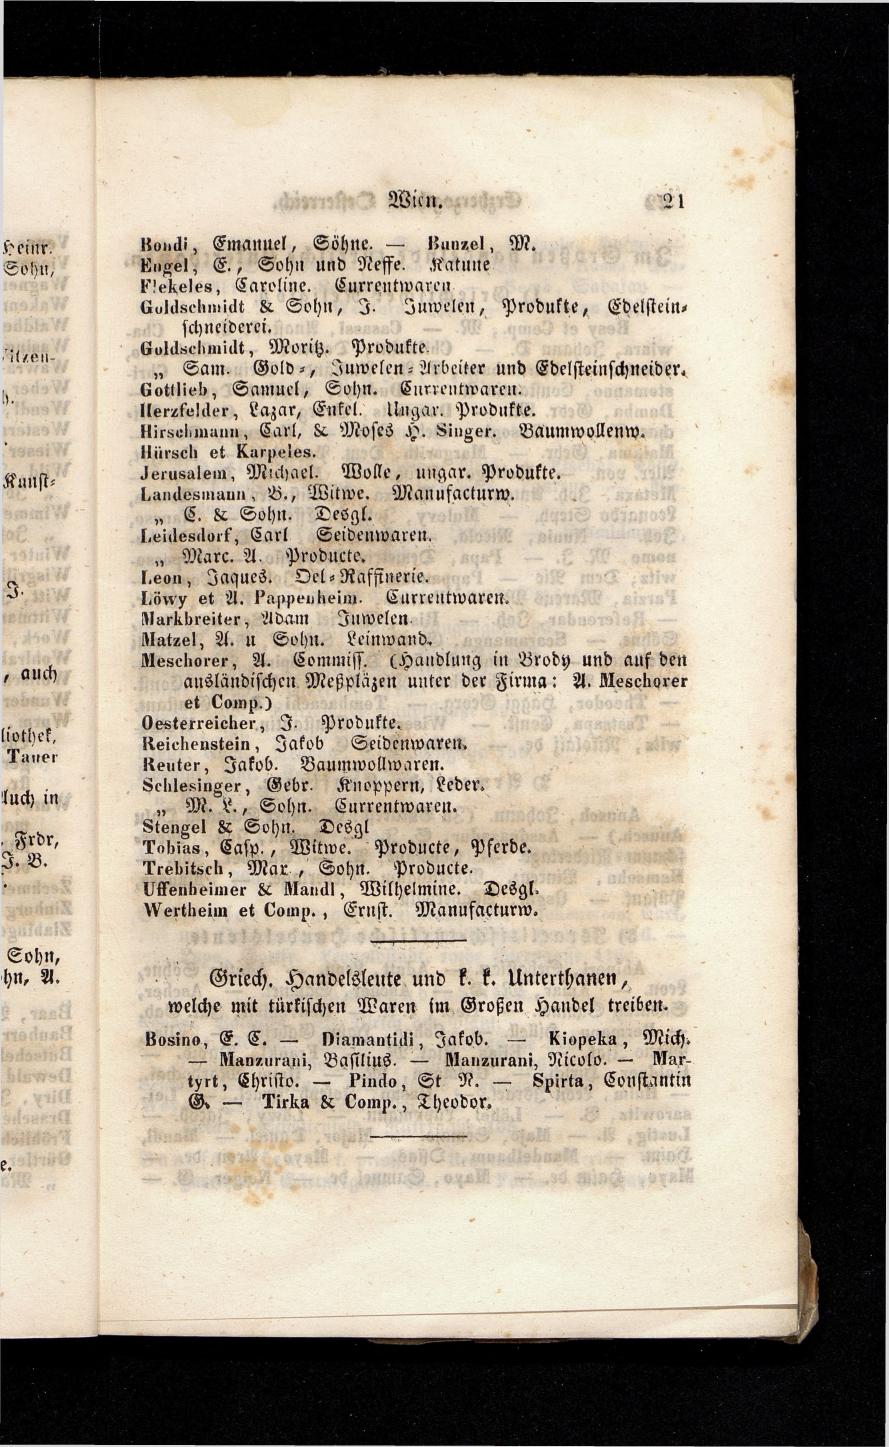 Grosses Adressbuch der Kaufleute. No. 13. Oesterreich ober u. unter der Enns 1844 - Seite 25